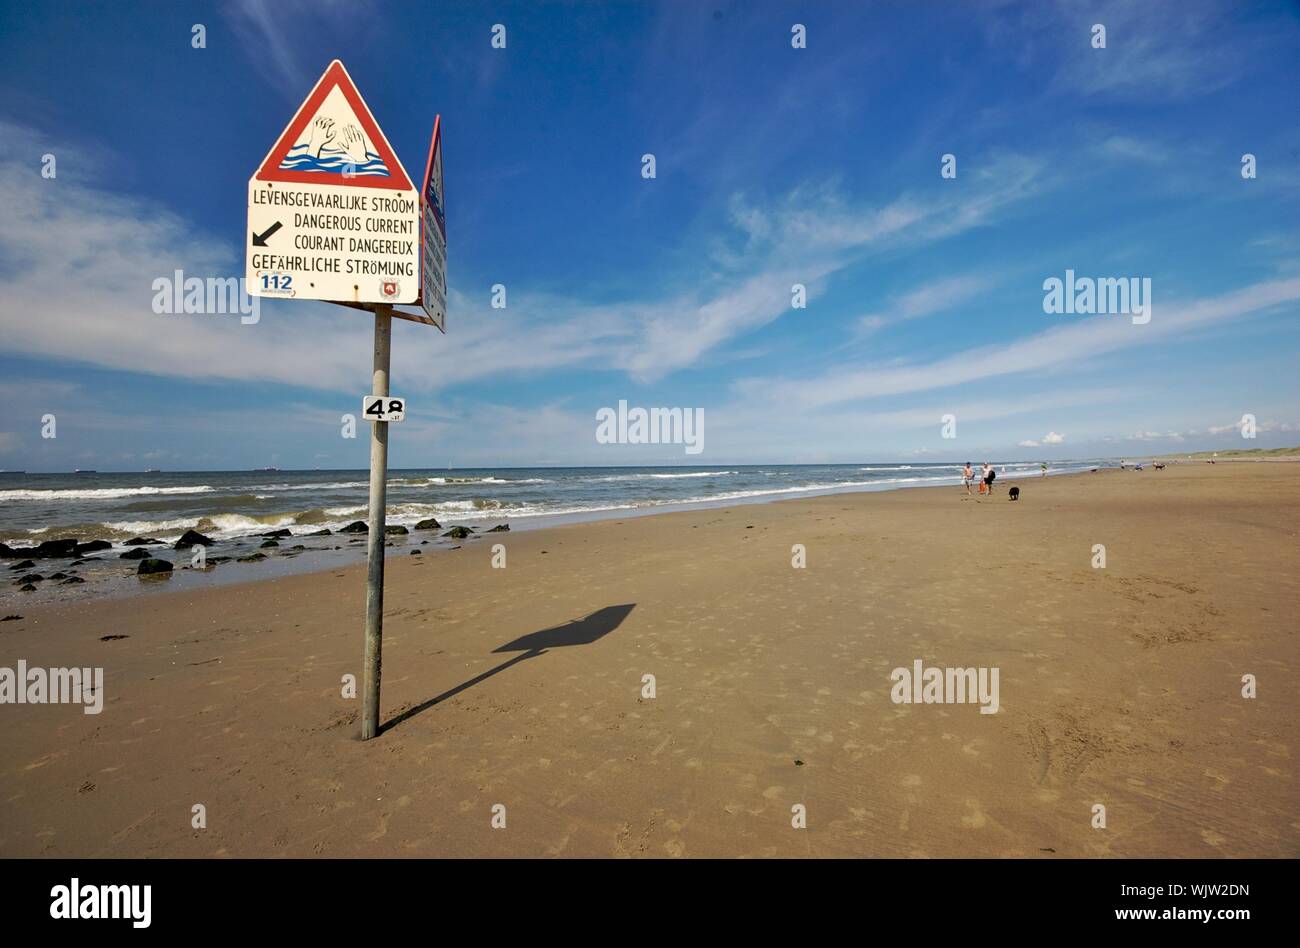 Piscine restriction signe sur une plage en été Banque D'Images